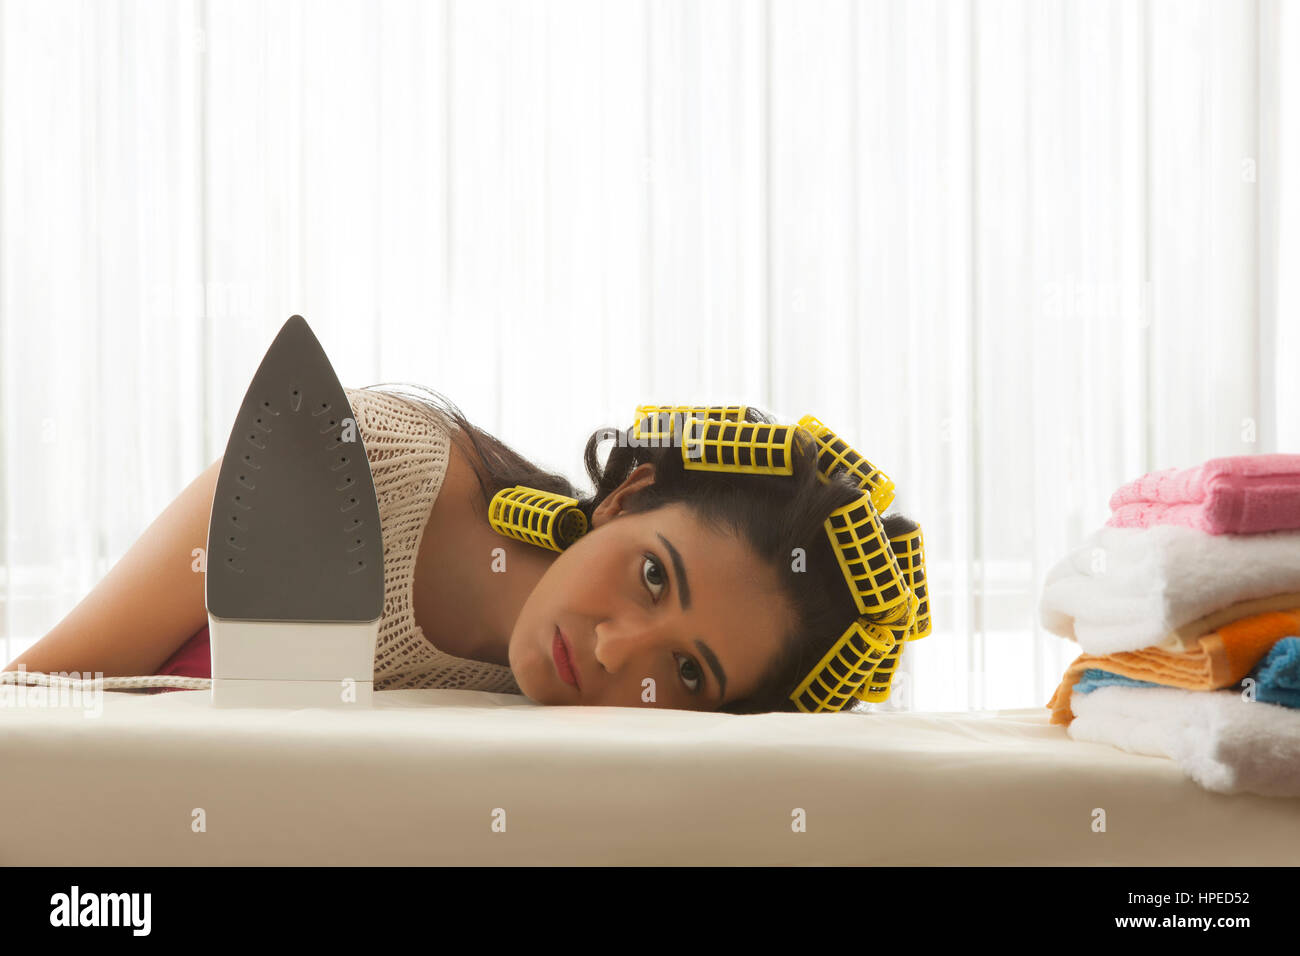 Junge Frau mit Lockenwickler schlafen am Bügelbrett Stockfotografie - Alamy